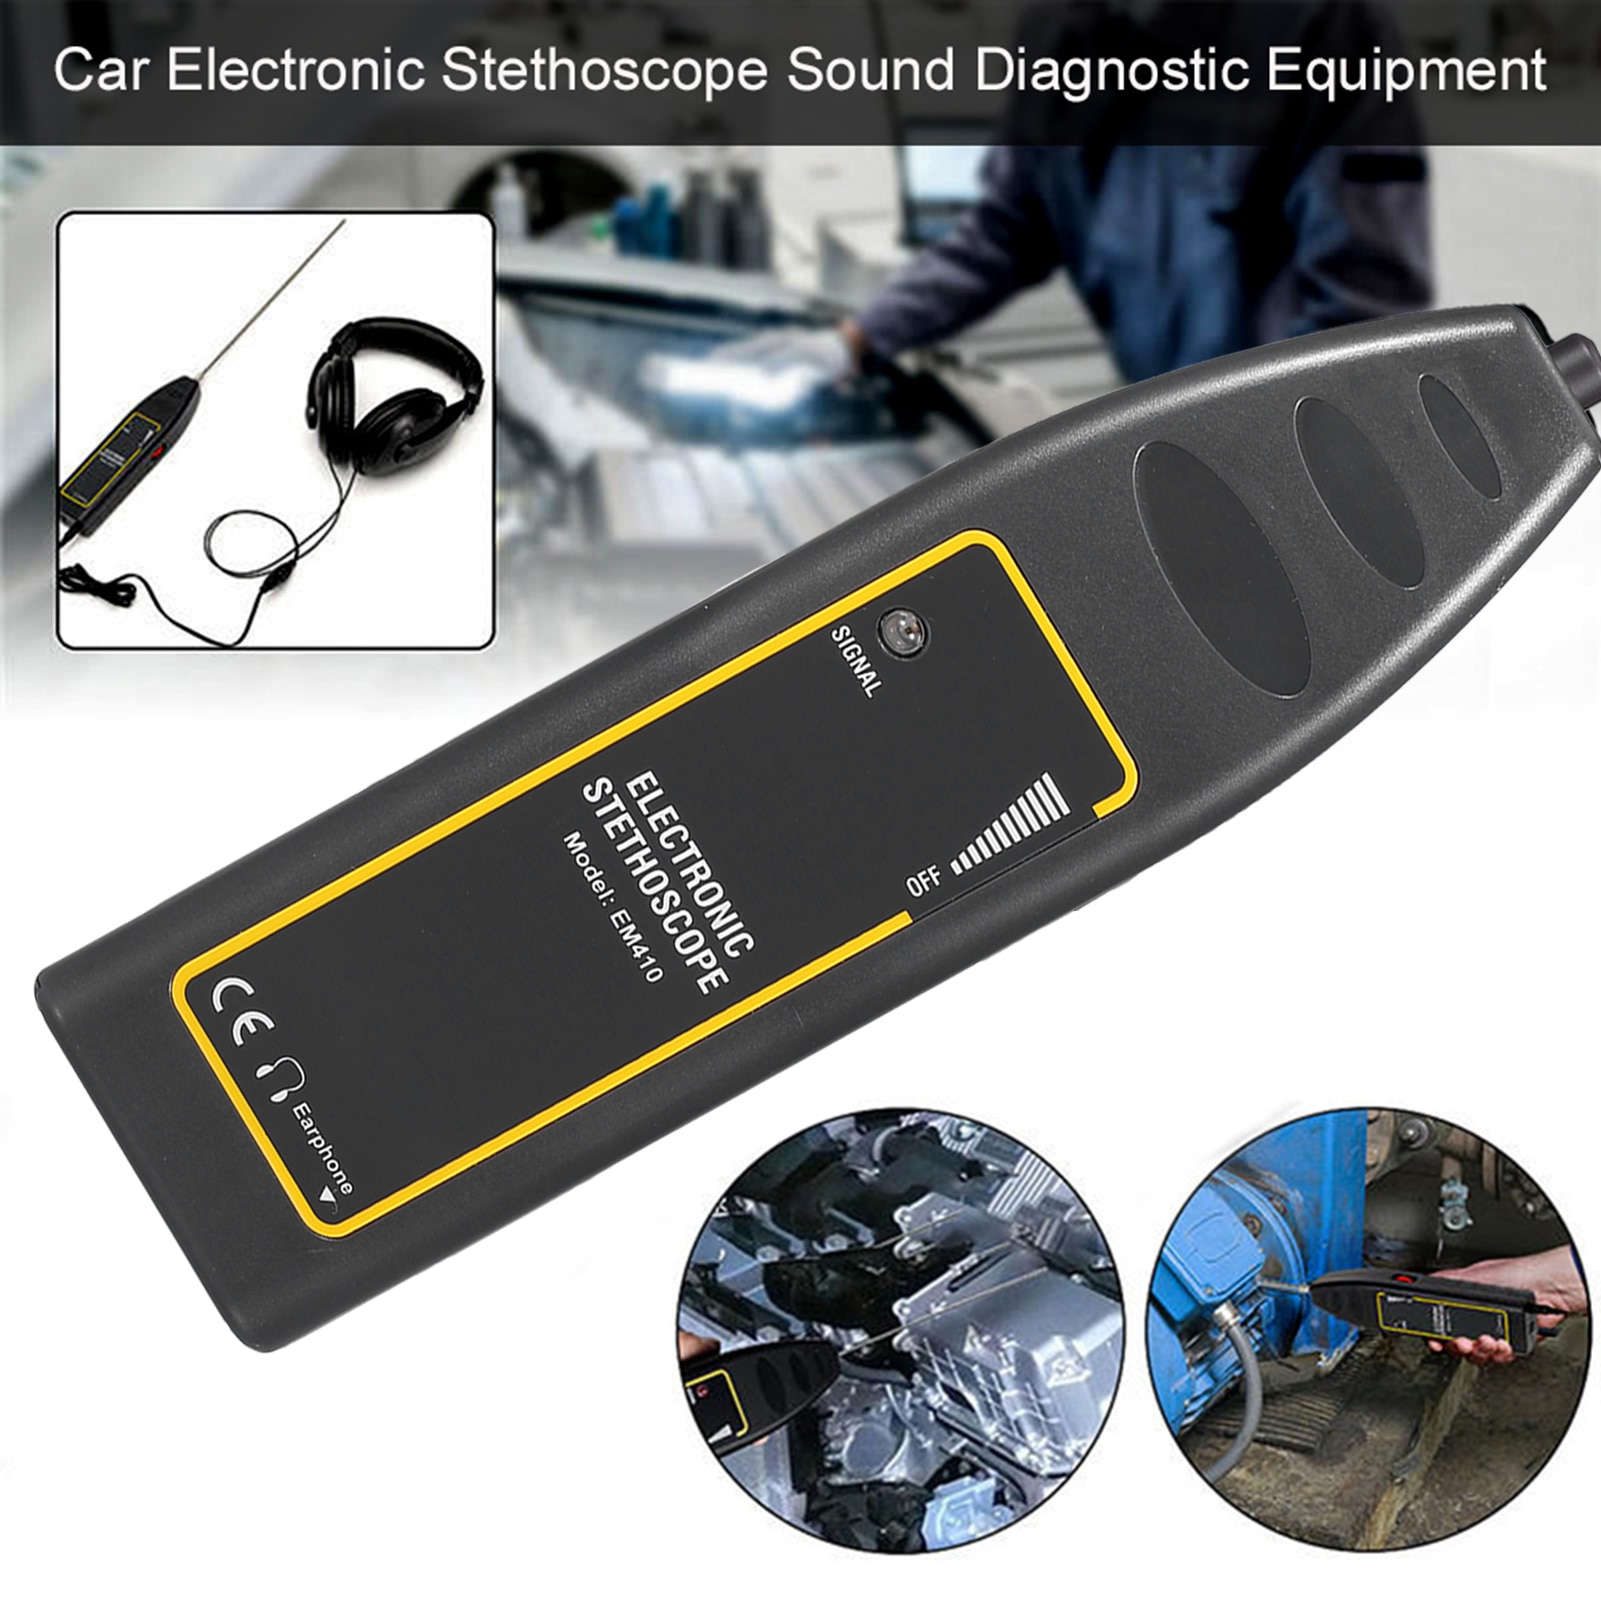 Equipo de diagnóstico de sonido de estetoscopio electrónico automotriz 